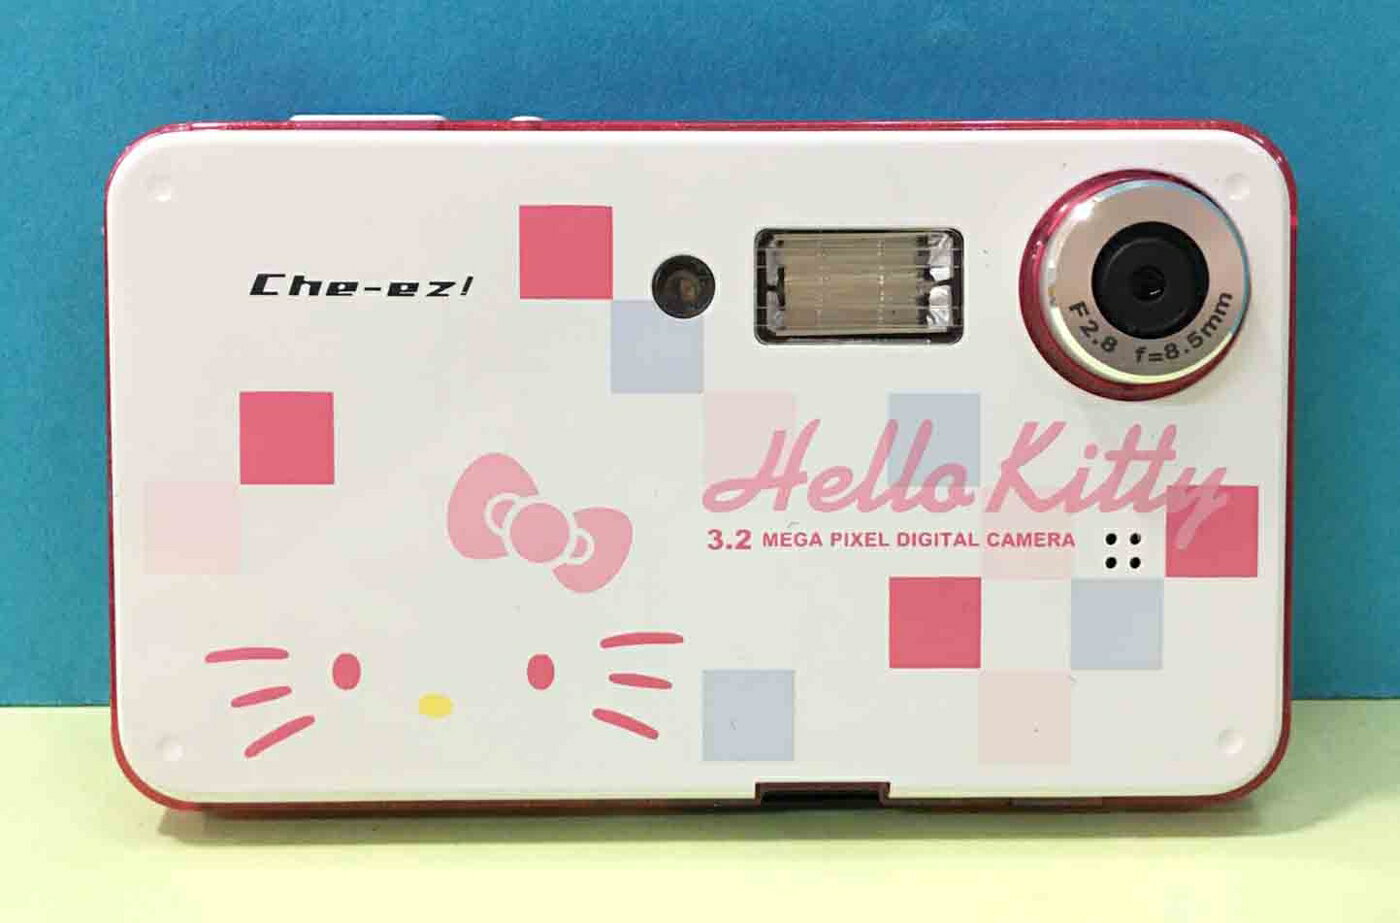 【震撼精品百貨】Hello Kitty 凱蒂貓 數位相機321萬畫素#66544 震撼日式精品百貨